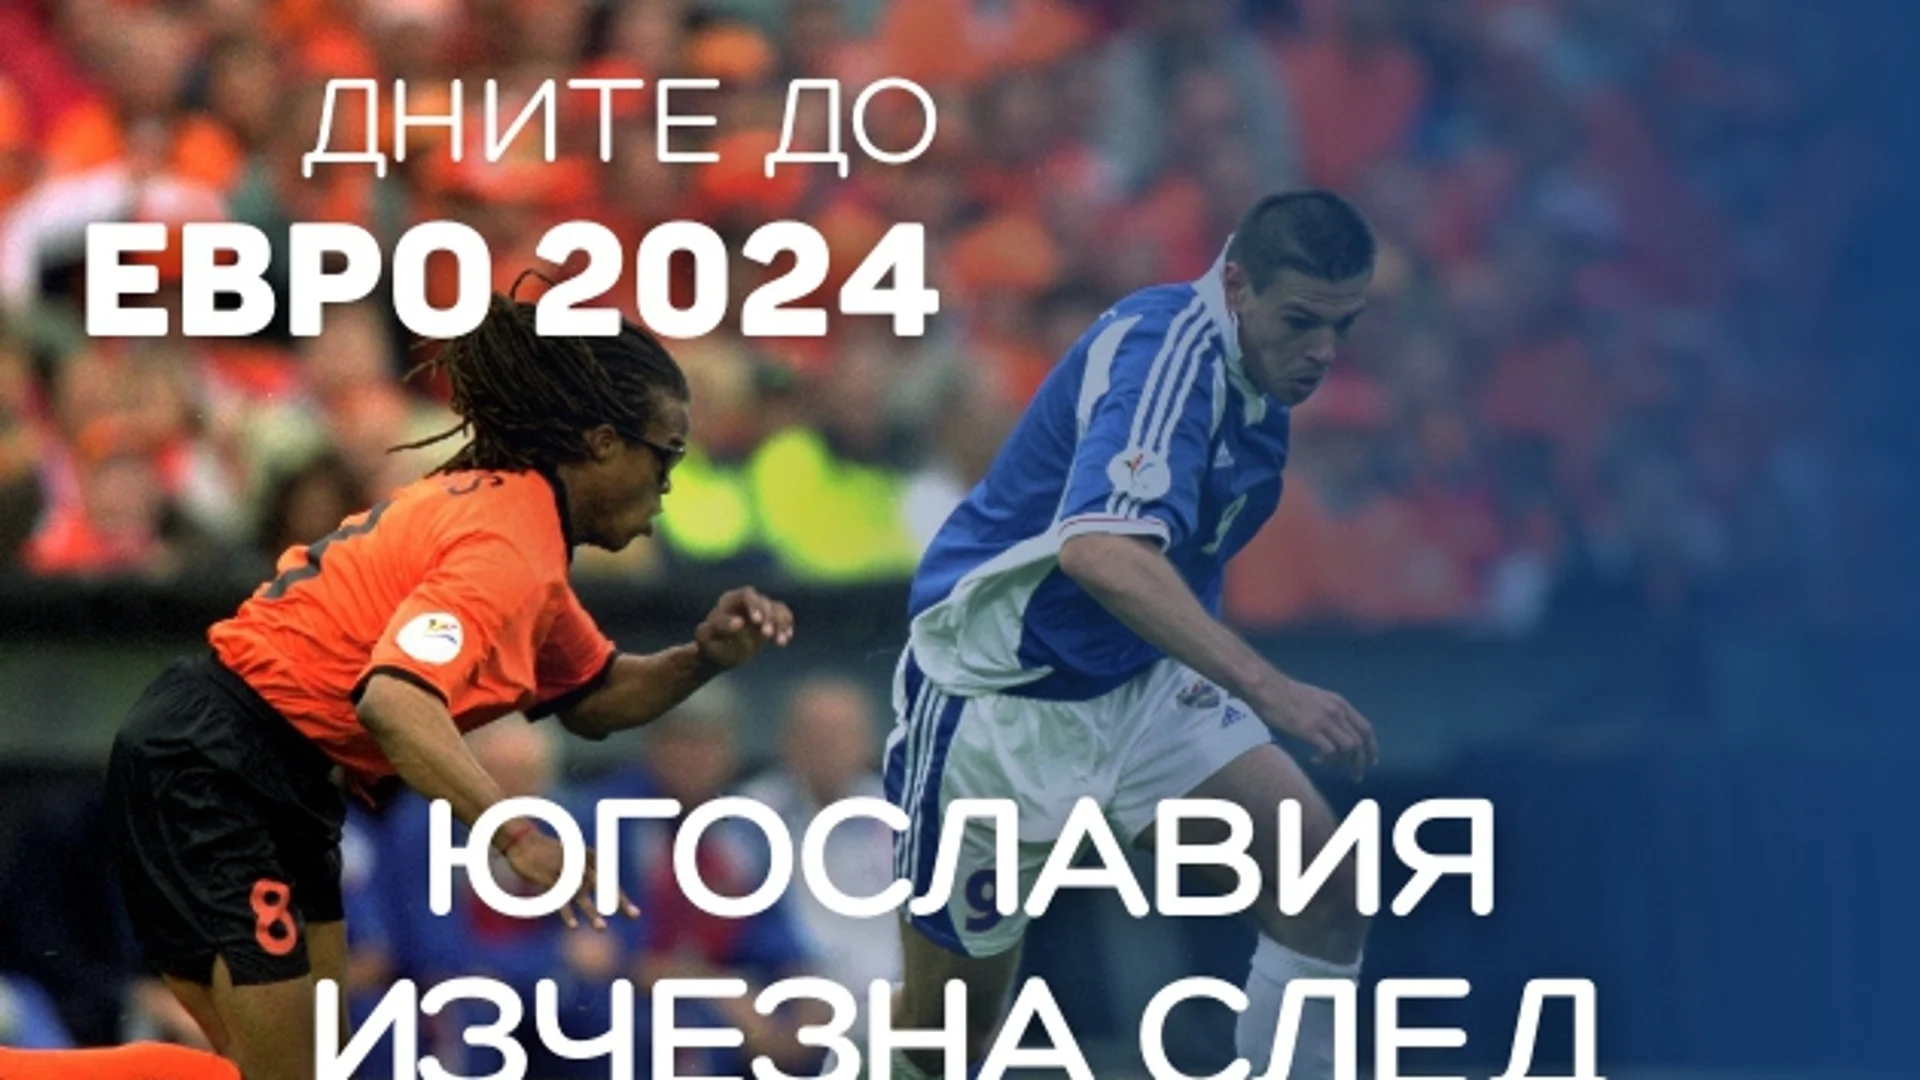 141 дни до ЕВРО 2024: Югославия изчезна от футболната карта след резил (ВИДЕО)